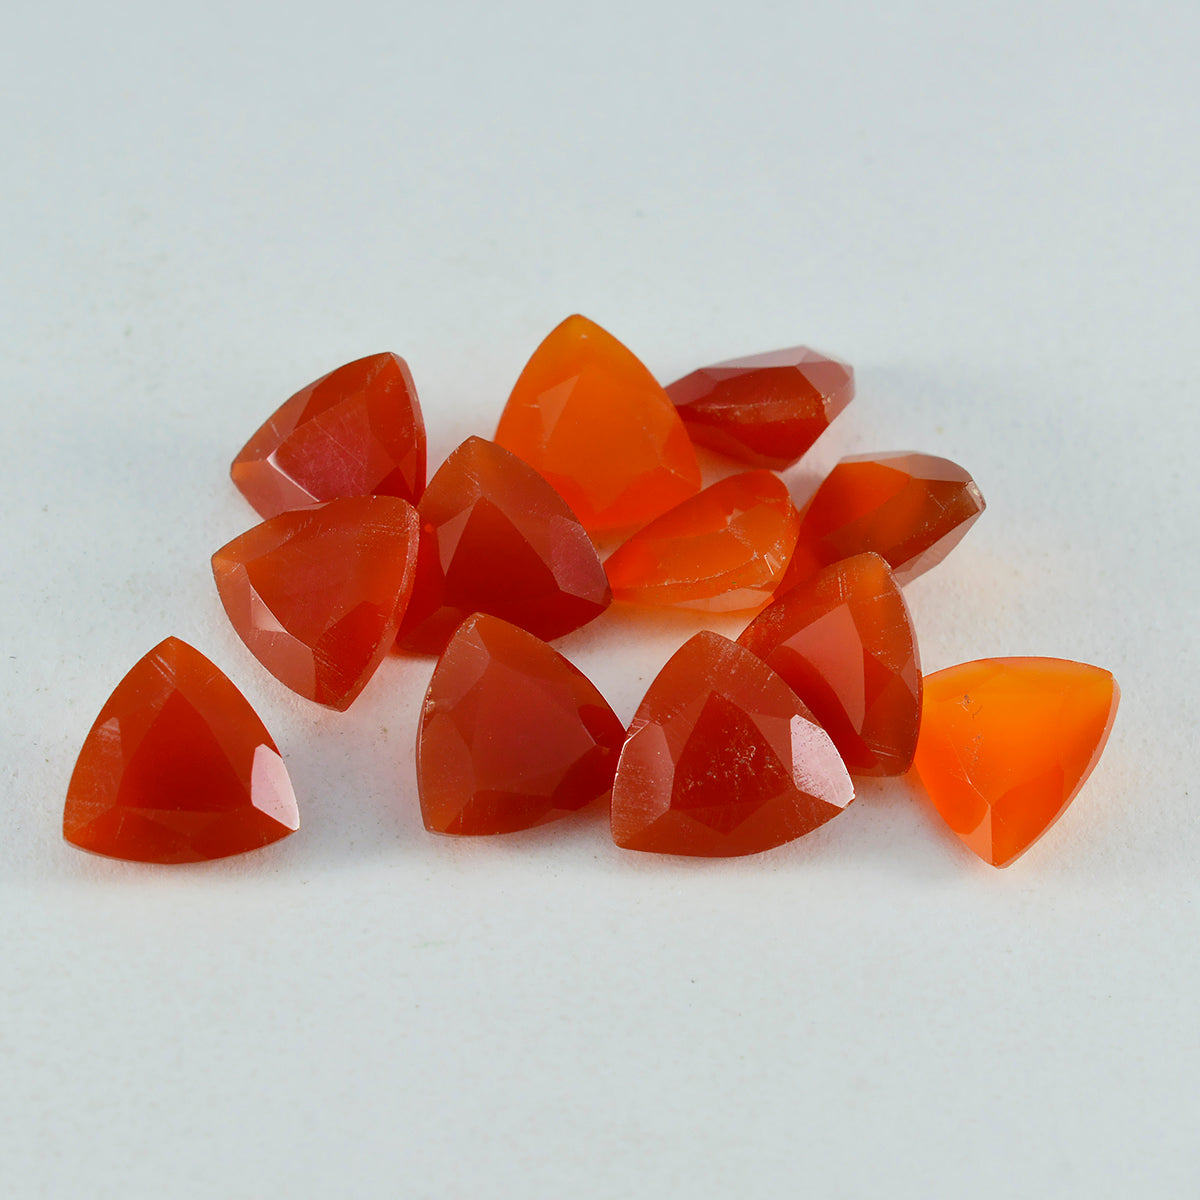 riyogems 1 шт. натуральный красный оникс ограненный 5x5 мм форма триллиона отличное качество свободный драгоценный камень